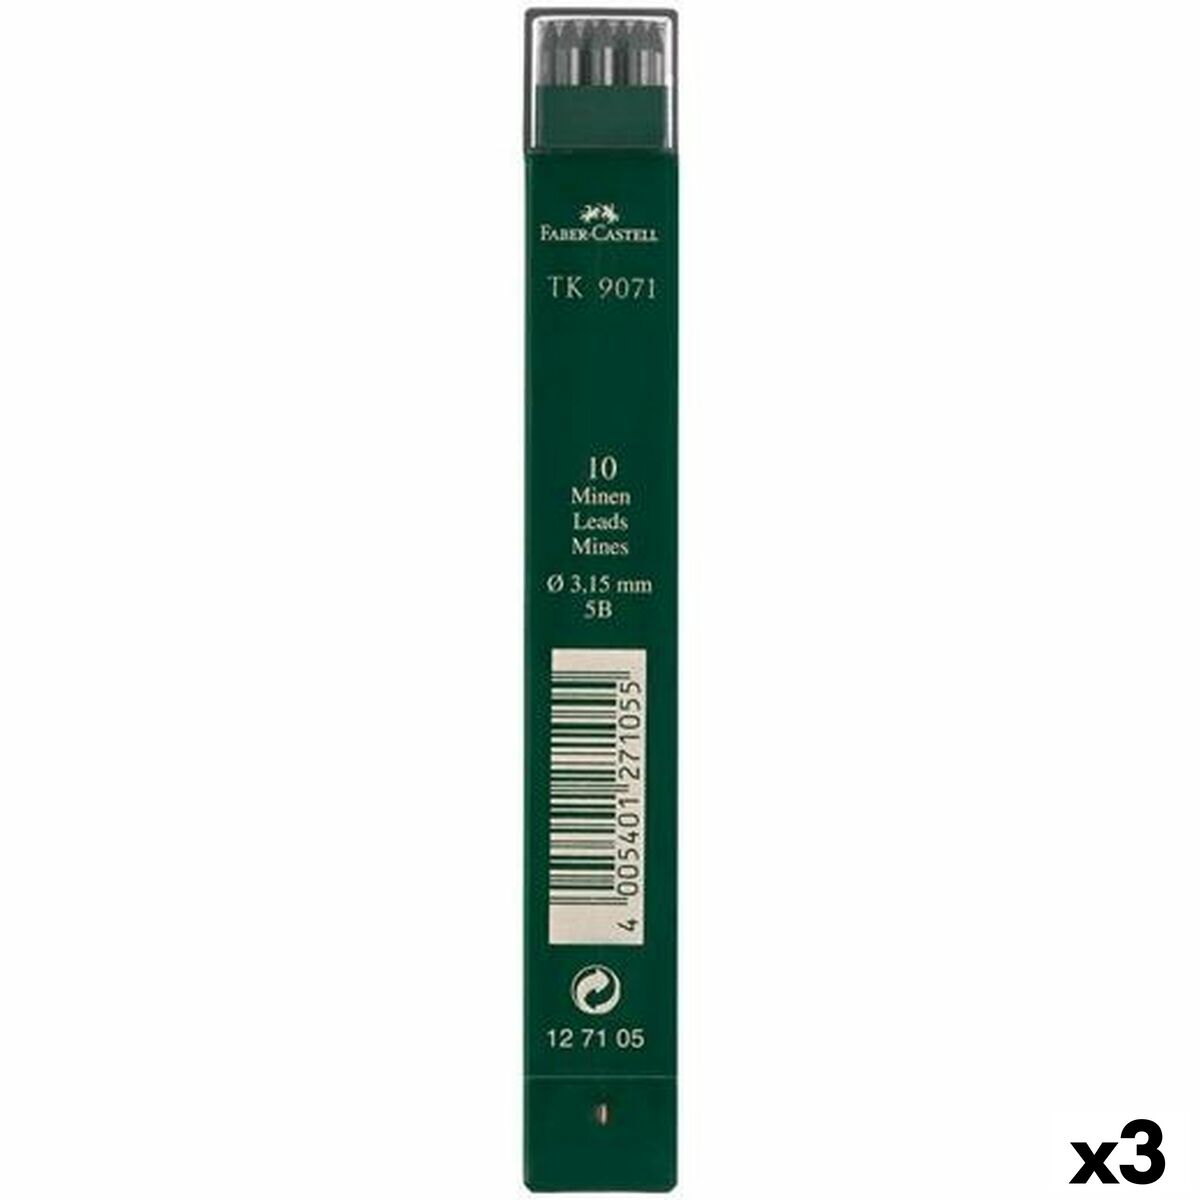 Piese de schimb pentru plumbul creionului Faber-Castell Tk9071 5B 3,15 mm (3 Unități)